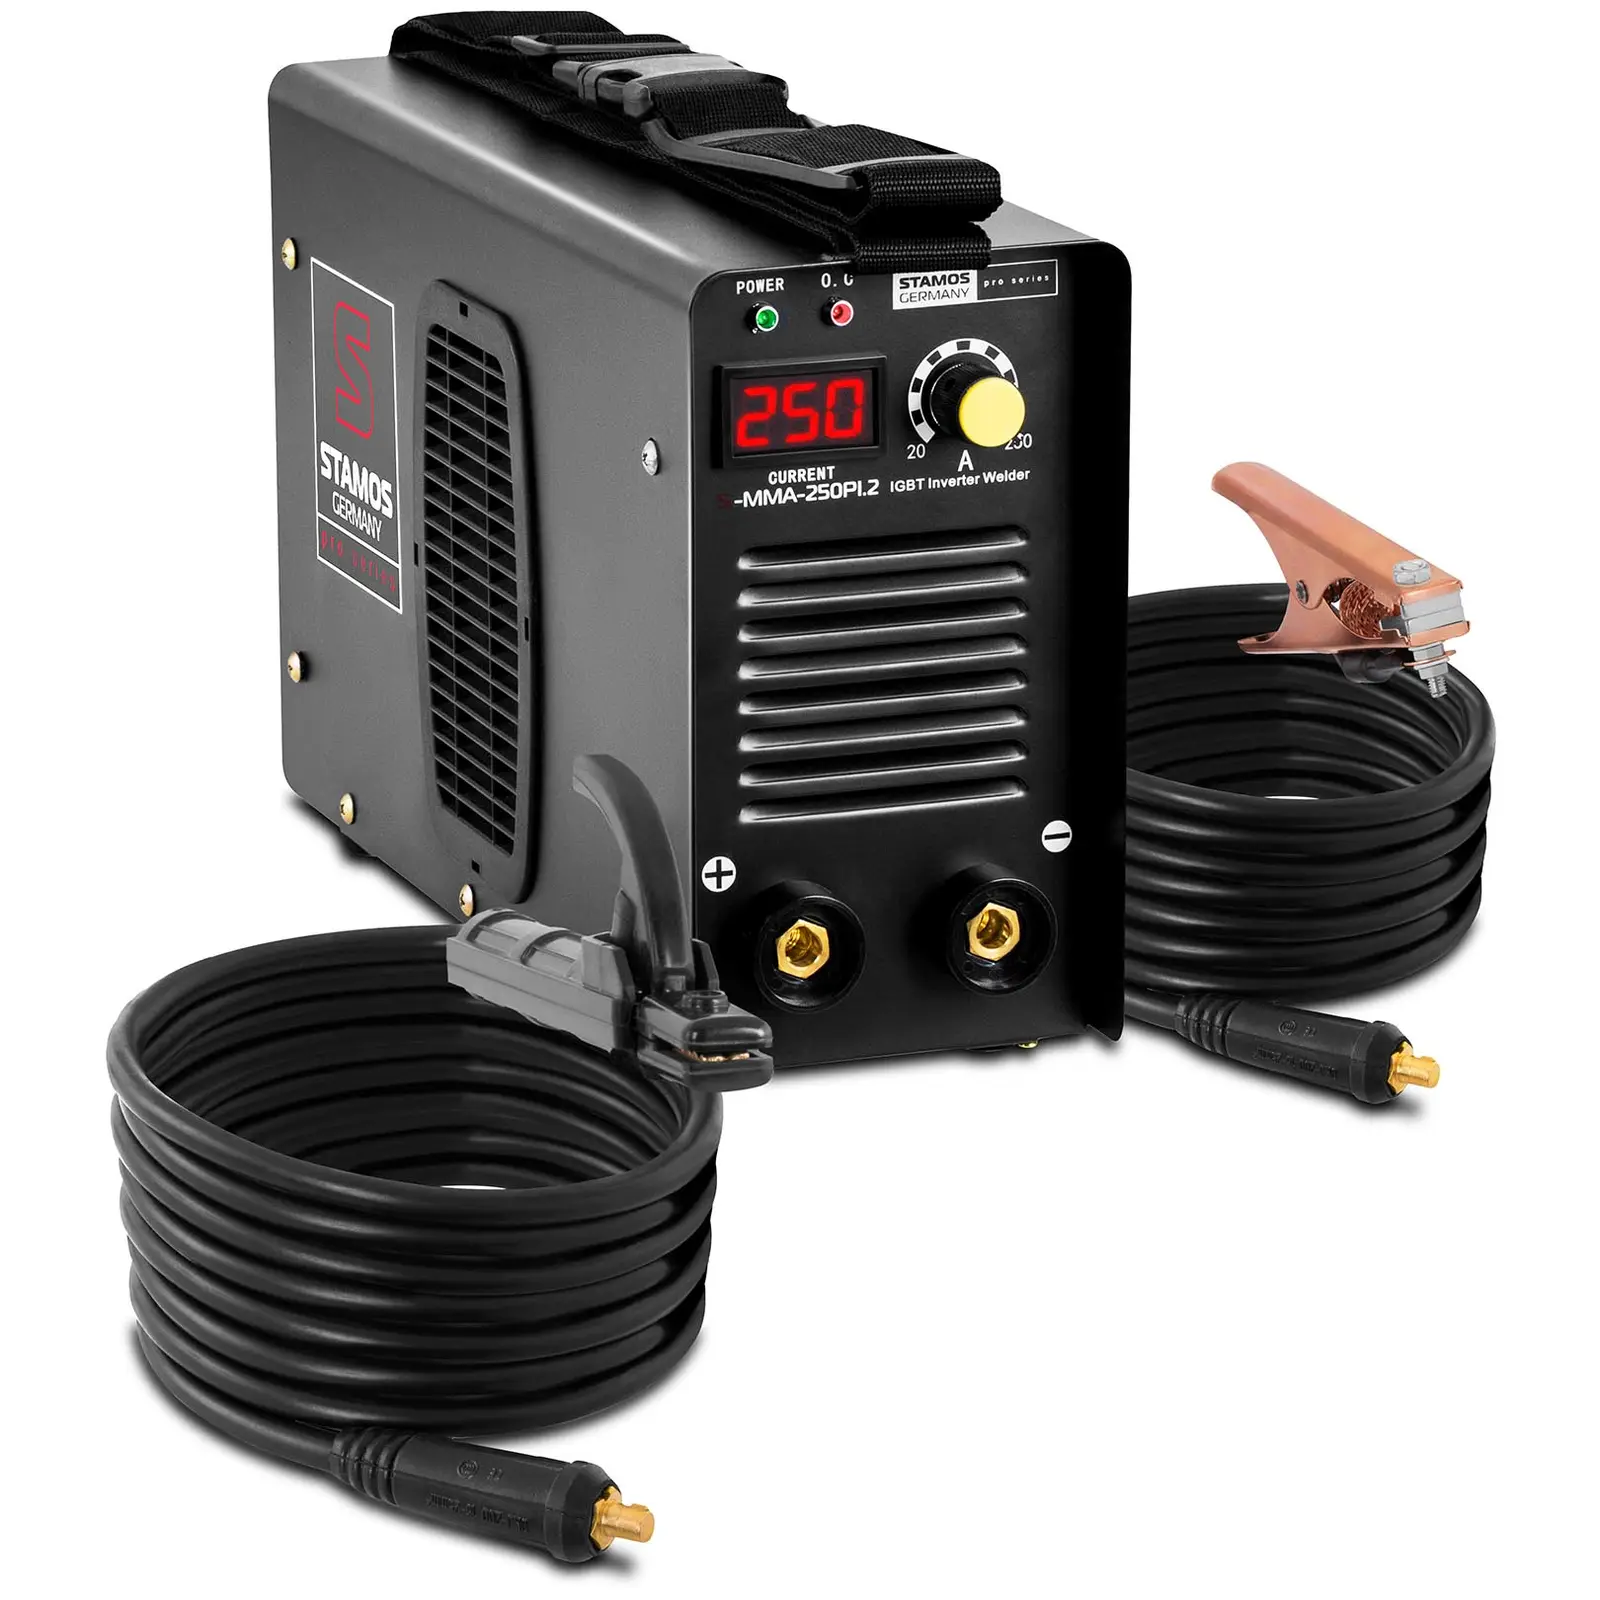 Varilec elektrod - 250 A - 8 m kabel - Hot Start - PRO